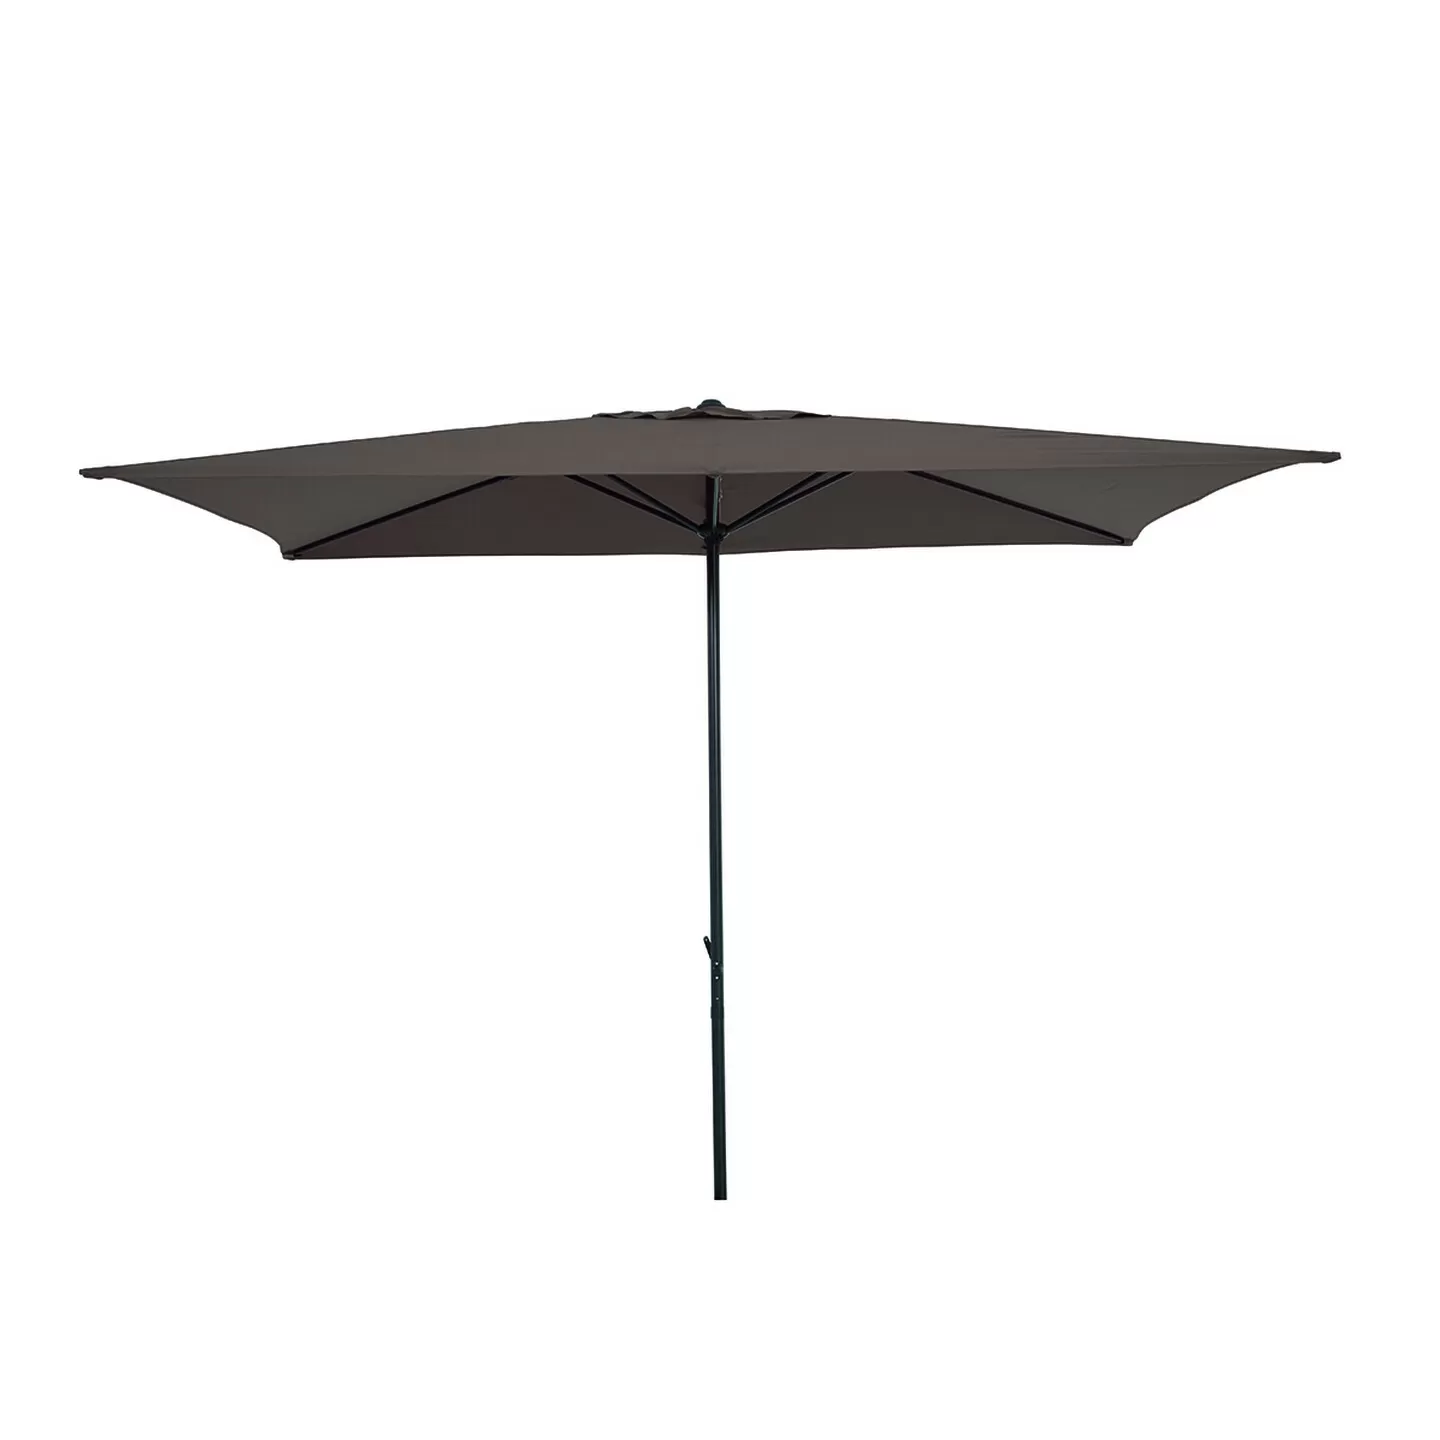 Sunfun - Sunfun Venetien II Şemsiye Gri 200x300 cm